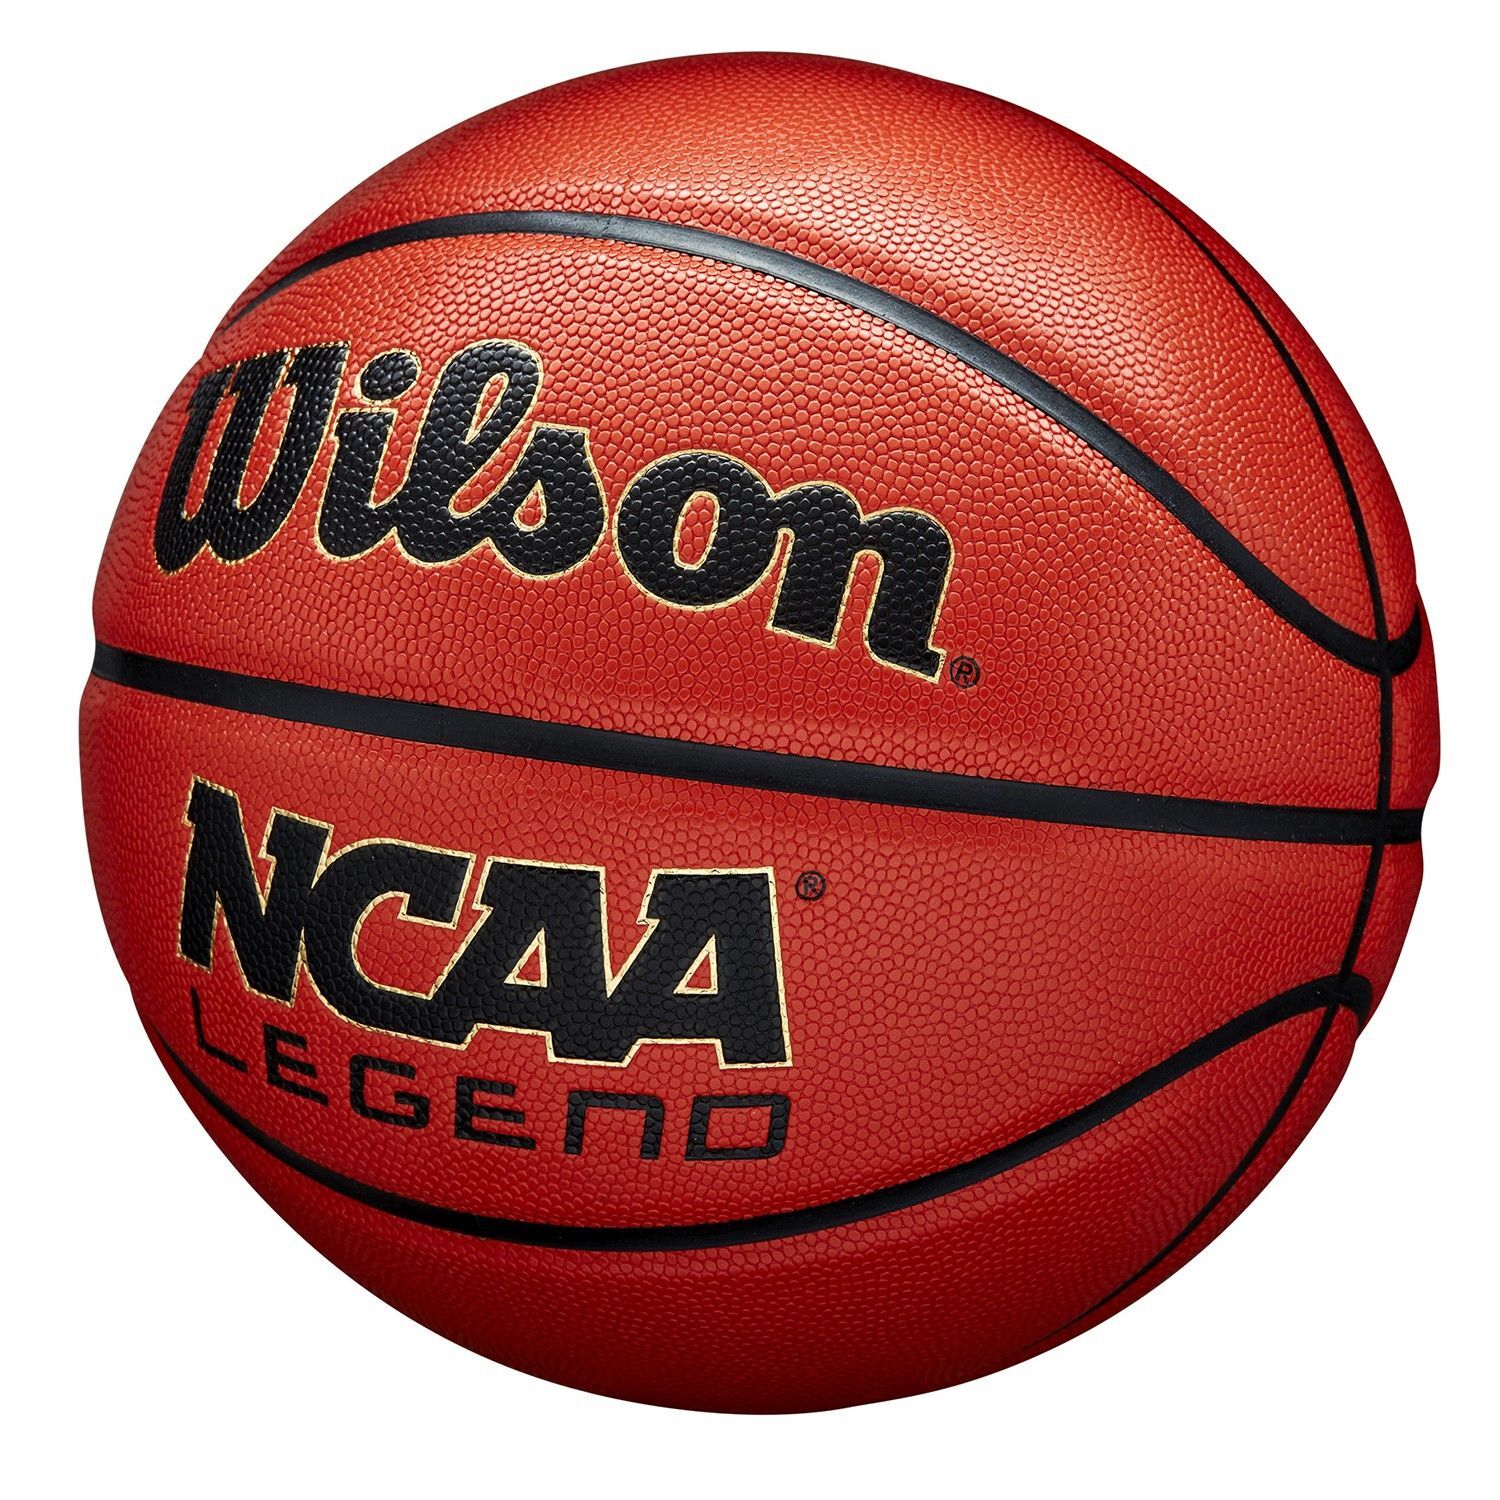 Balón De Baloncesto Wilson Ncaa Legend